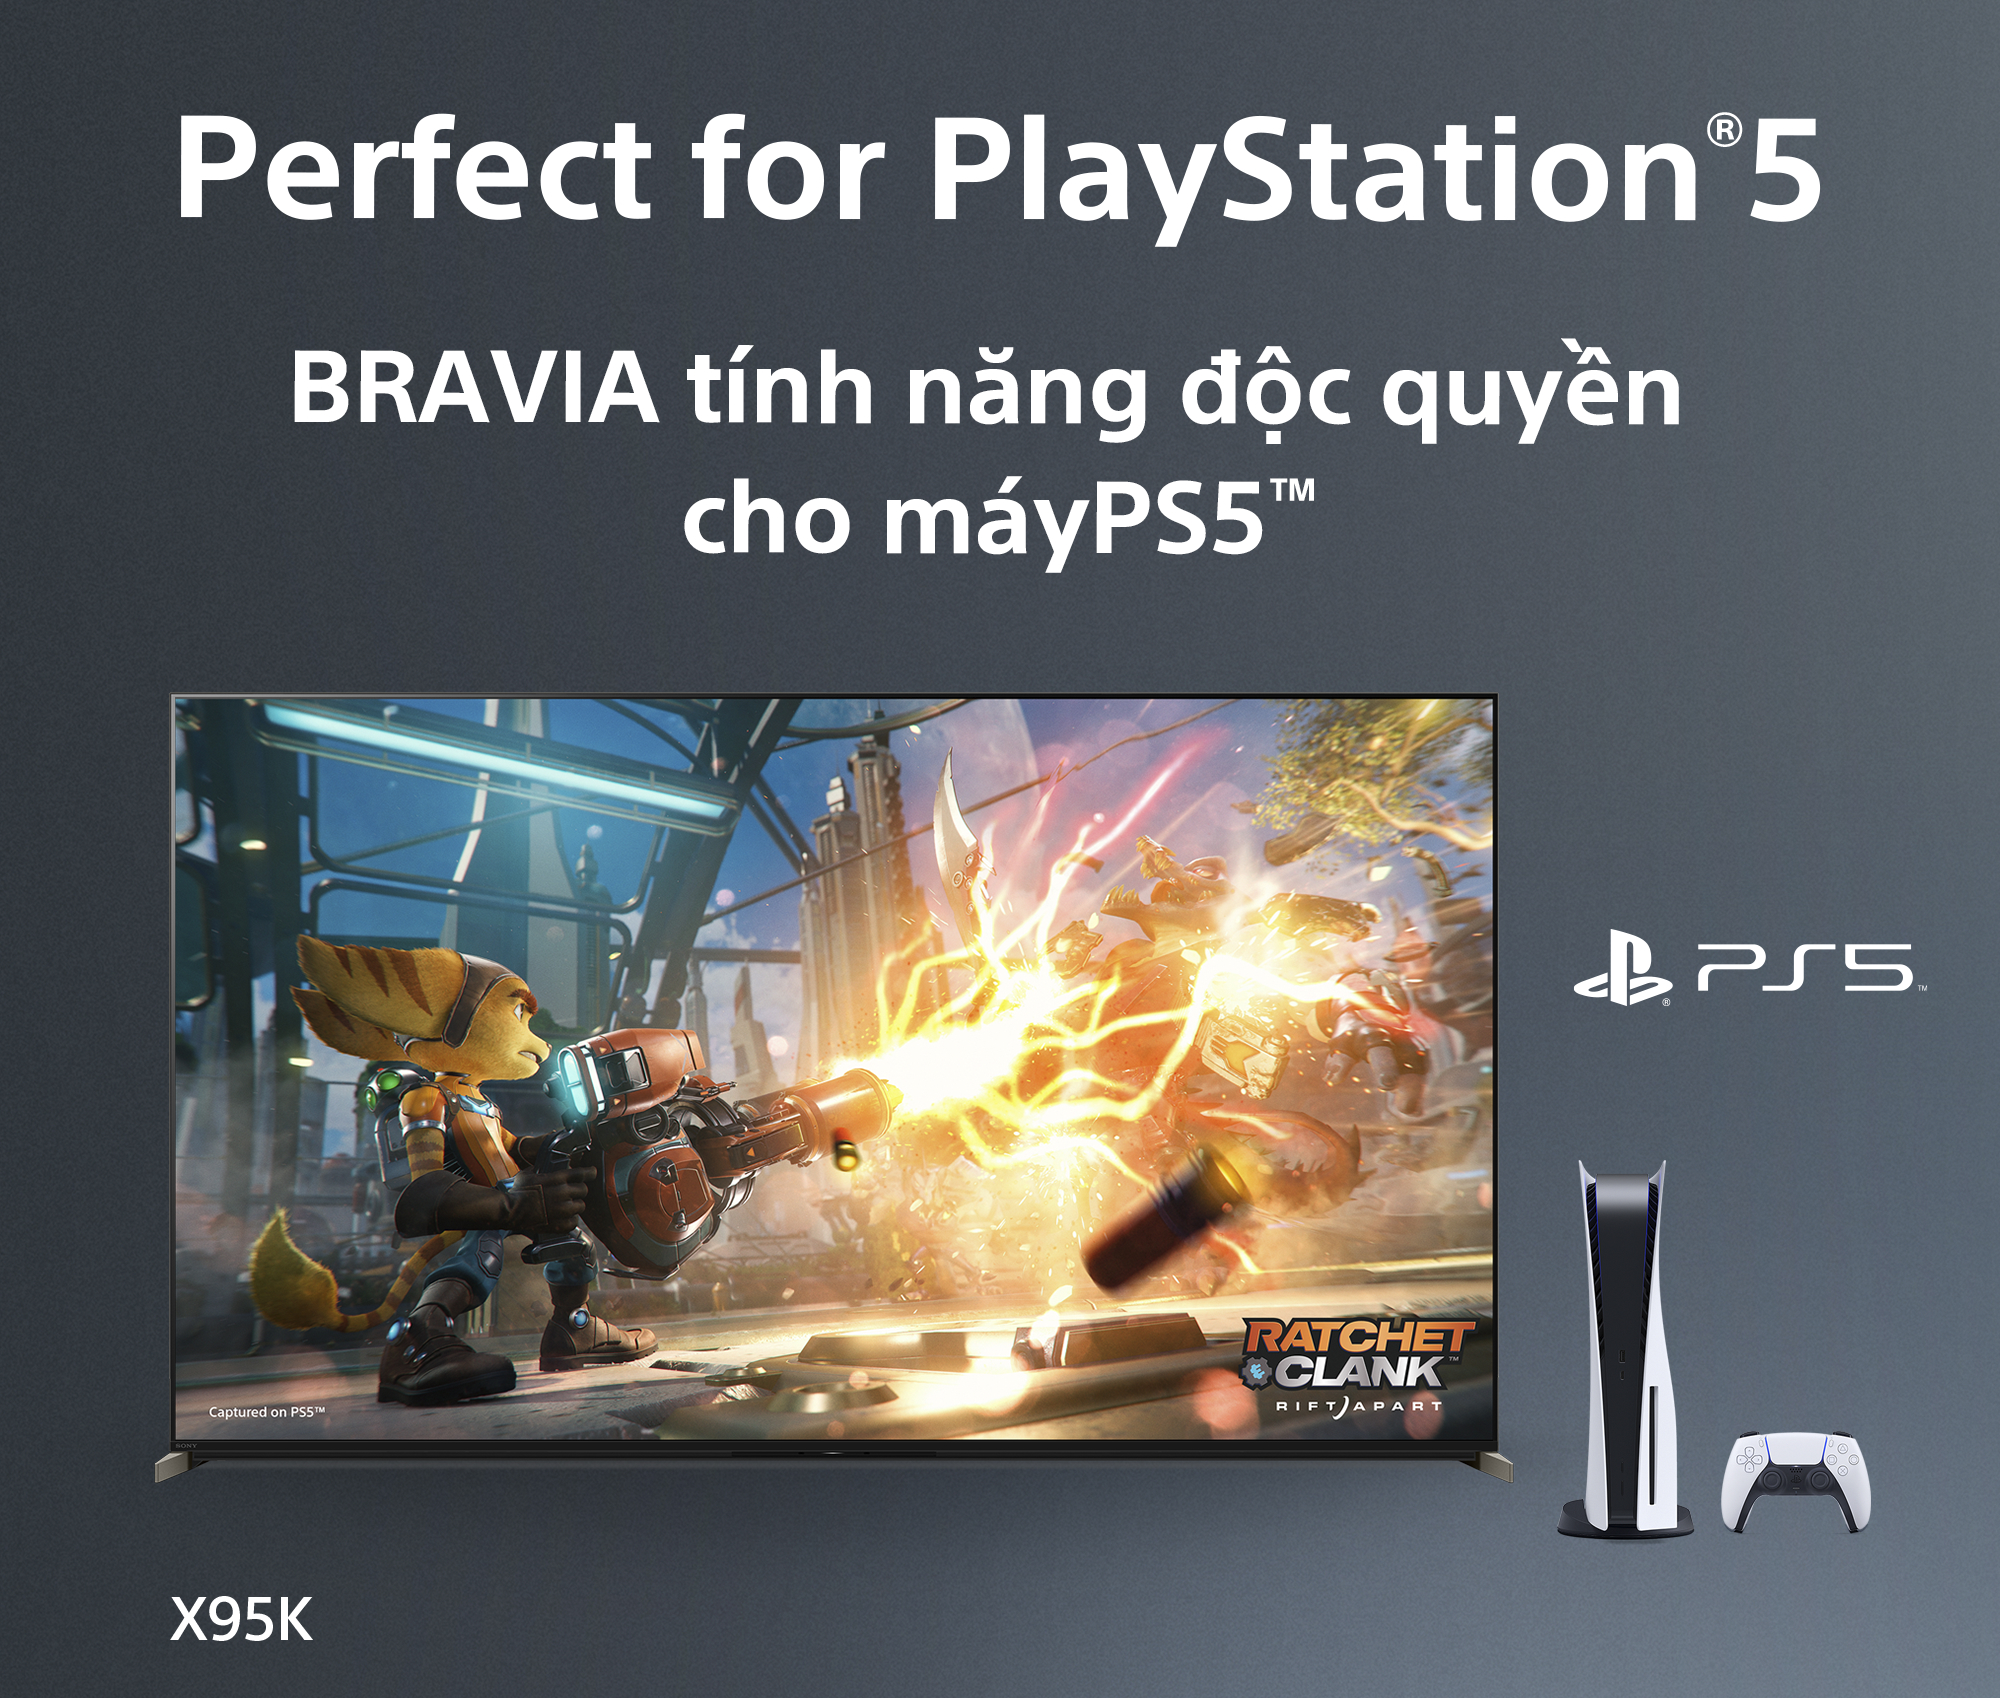 Bravia tính năng độc quyền cho máy PS5™ - Google Tivi Mini LED Sony 4K 75 inch XR-75X95K